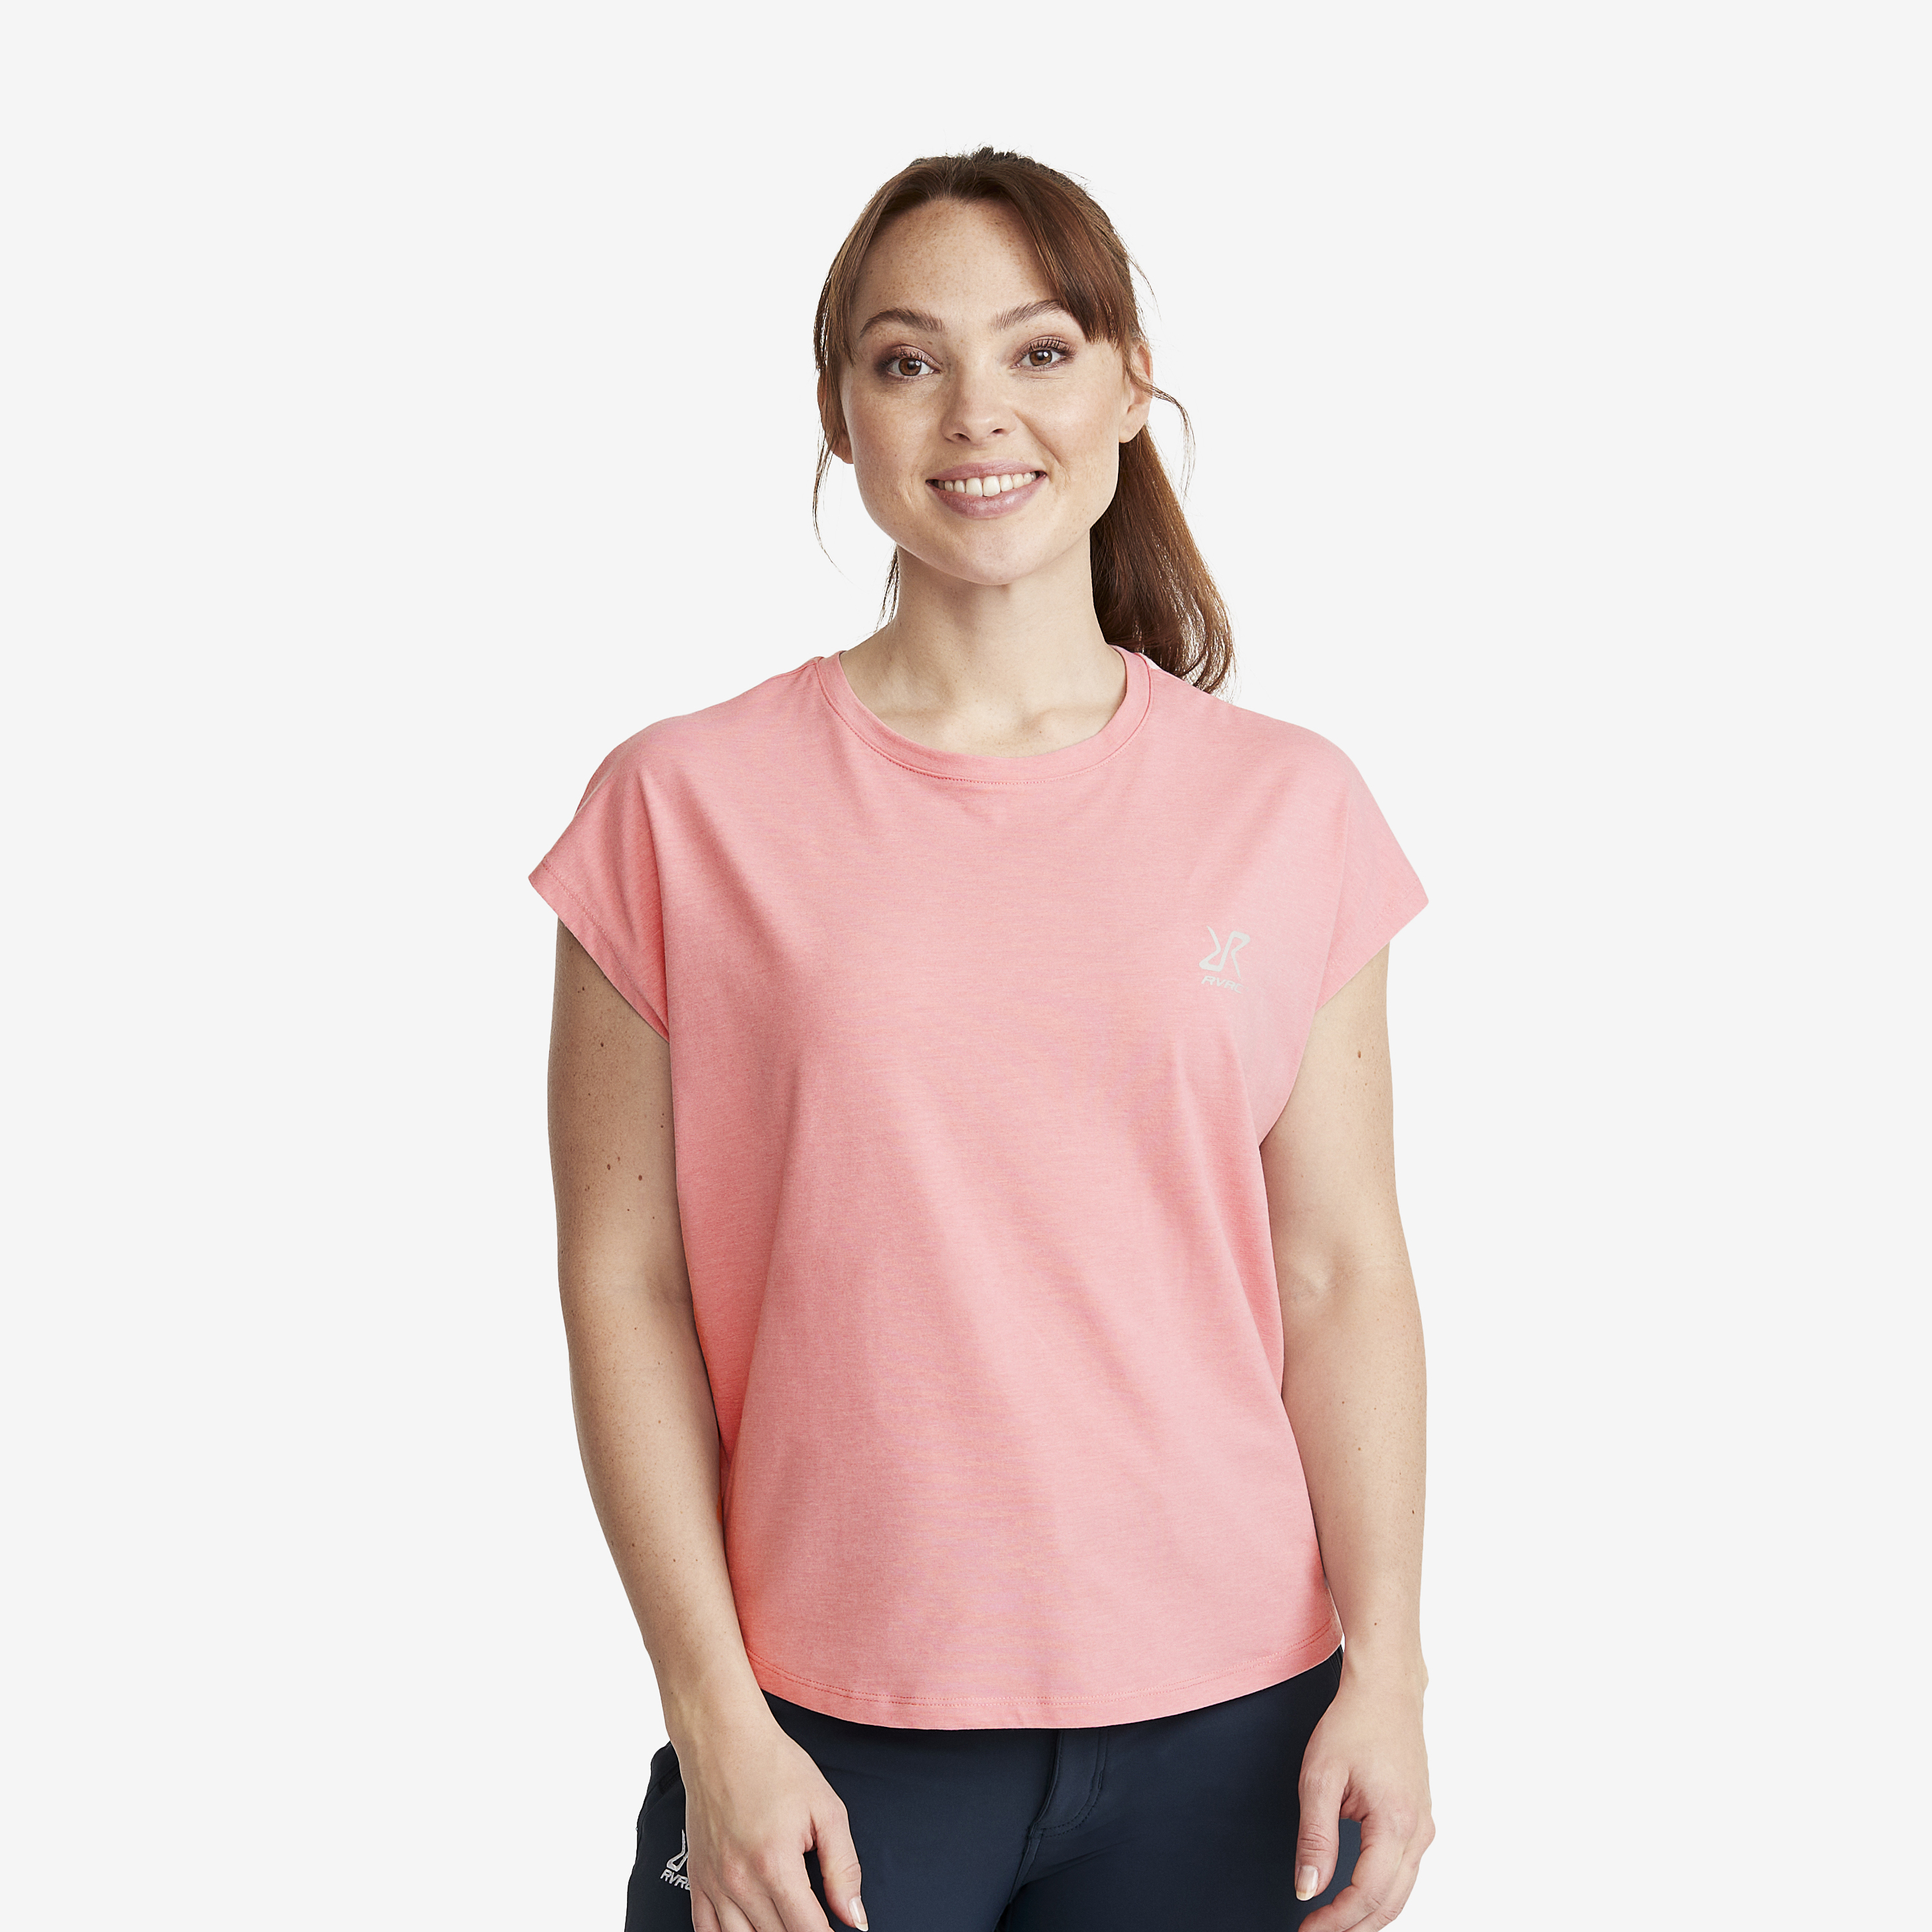 Soft Sleeveless Top - Dam - Dusty Pink, Storlek:XL - Dam > Tröjor > T-shirts